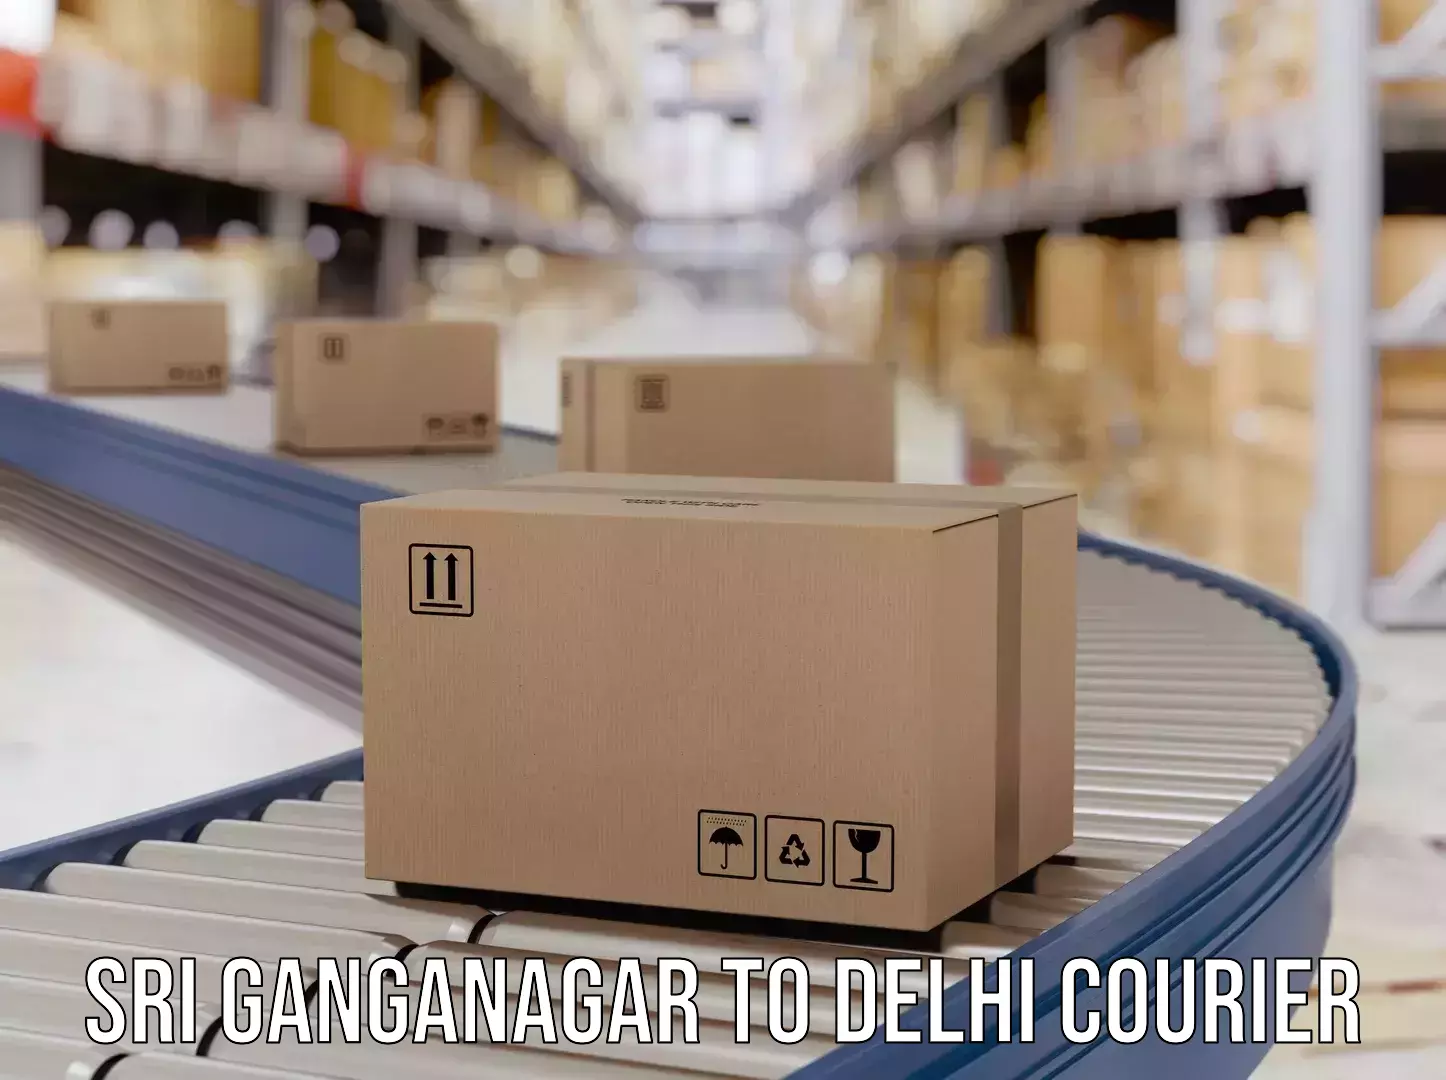 Express package handling Sri Ganganagar to NCR